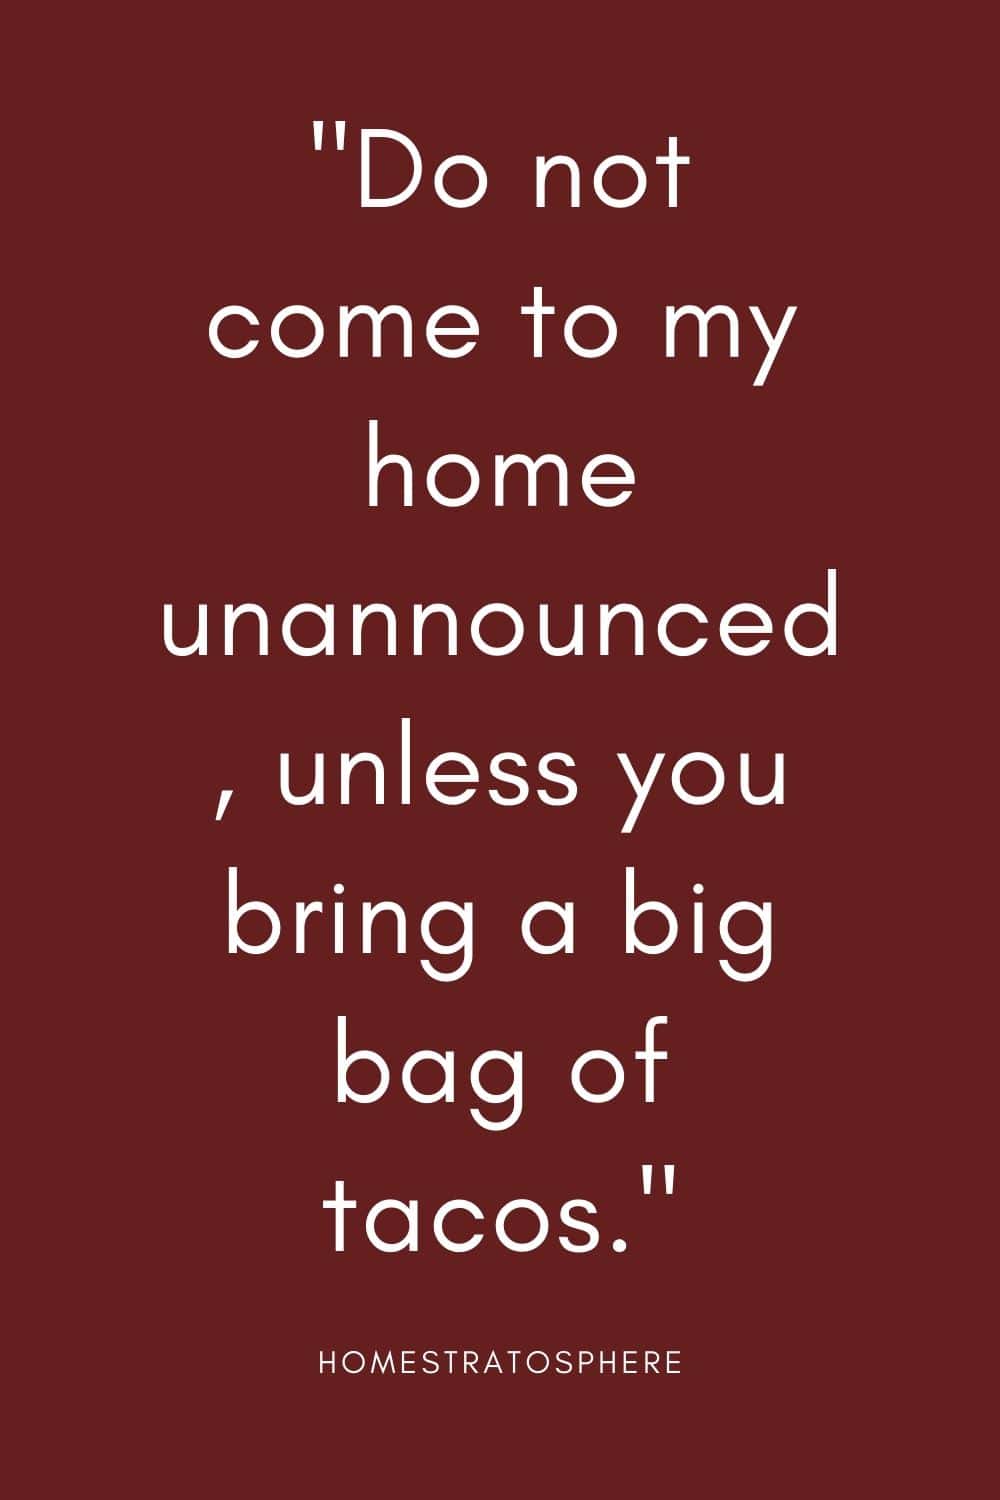 “不要不打招呼就来我家，除非你带了一大袋墨西哥卷饼。”